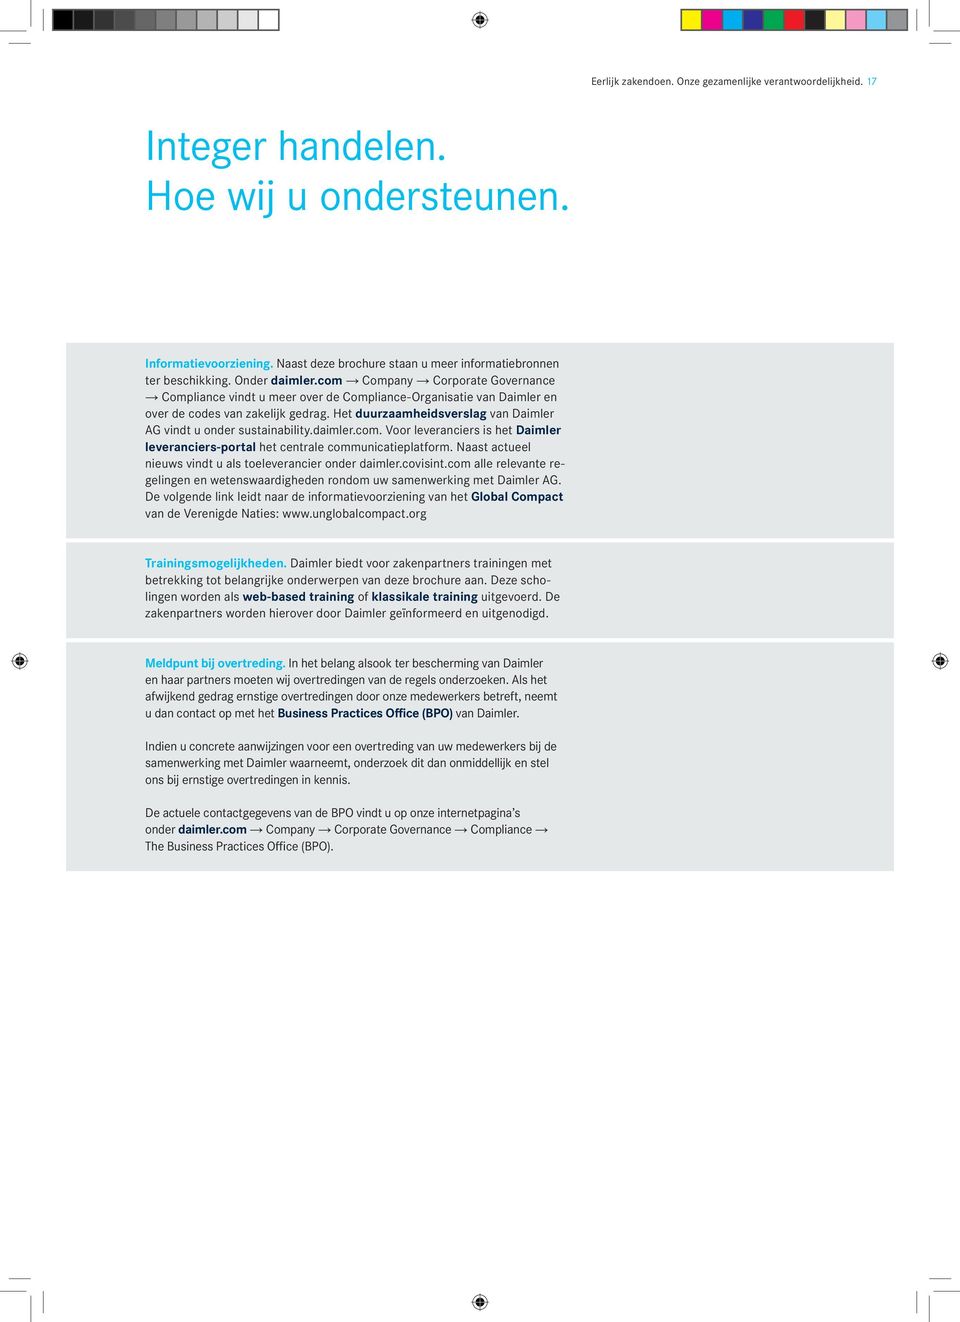 Het duurzaamheidsverslag van Daimler AG vindt u onder sustainability.daimler.com. Voor leveranciers is het Daimler leveranciers-portal het centrale communicatieplatform.